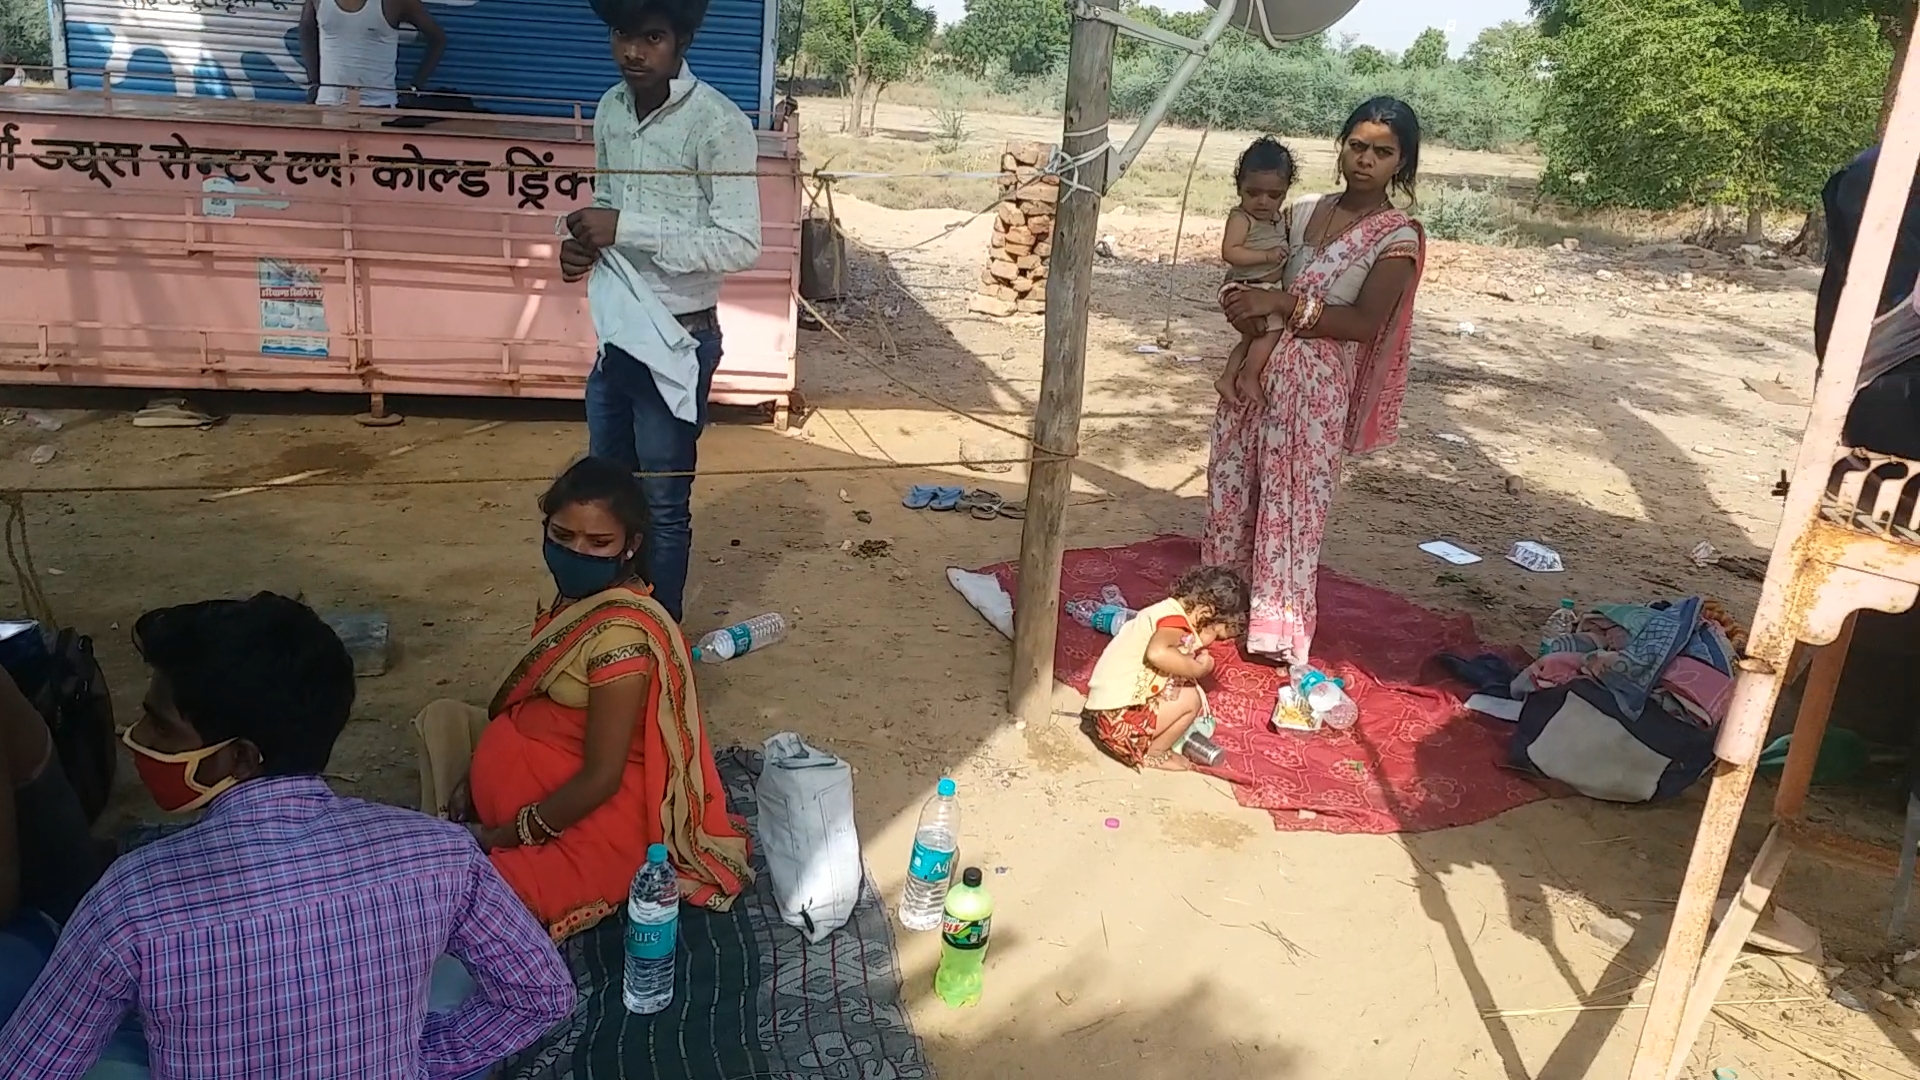 राजस्थान प्रवासी मजदूर यूपी गर्भवती, प्रवासियों से जुड़ी खबर, जयपुर हिंदी न्यूज, राजस्थान समाचार, rajasthan news, jaipur news